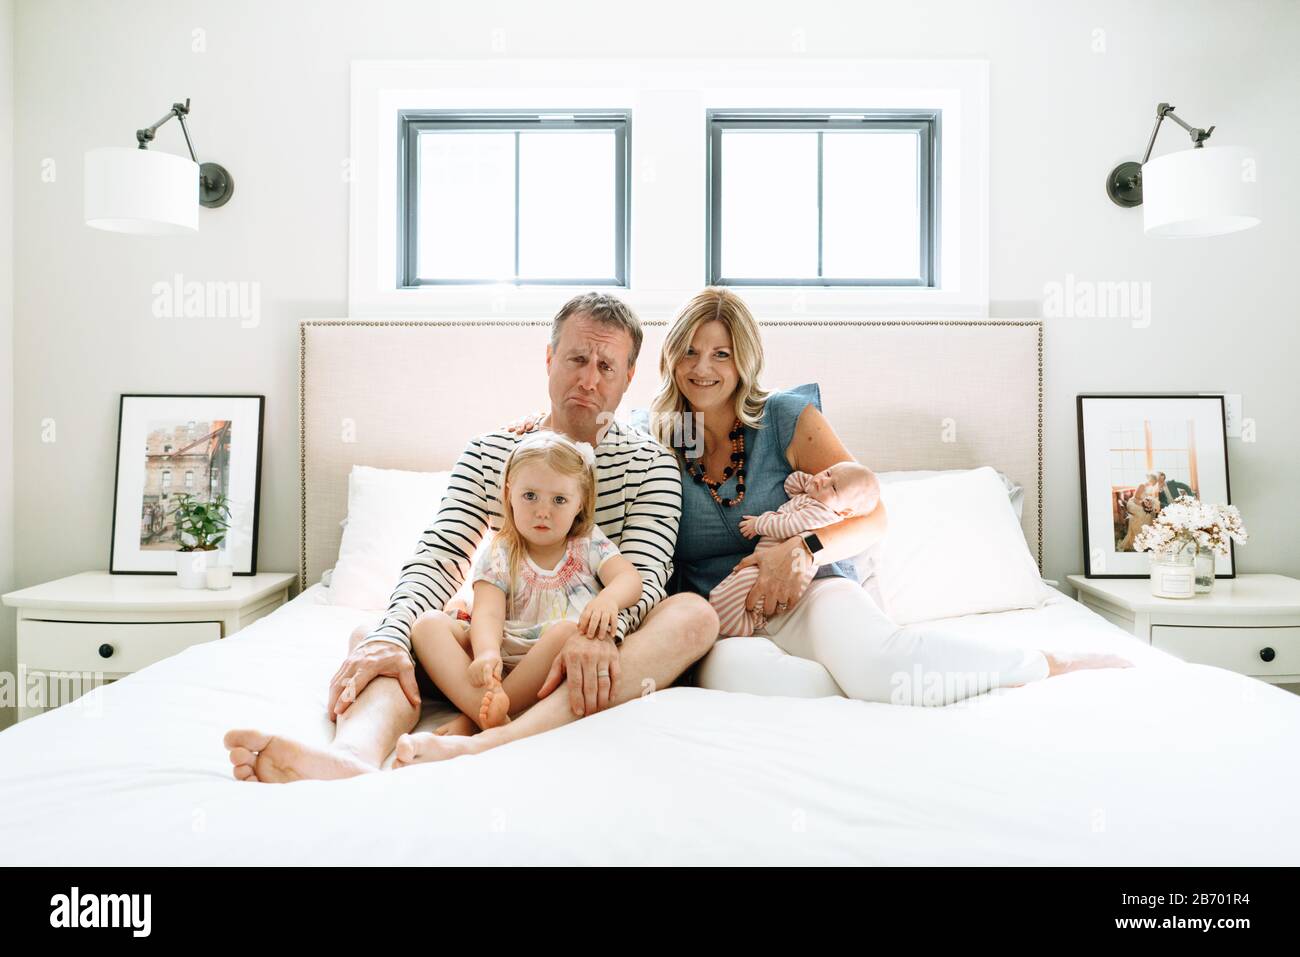 Porträt einer Familie, die zusammen auf einem Bett sitzt und dumme Gesichter macht Stockfoto